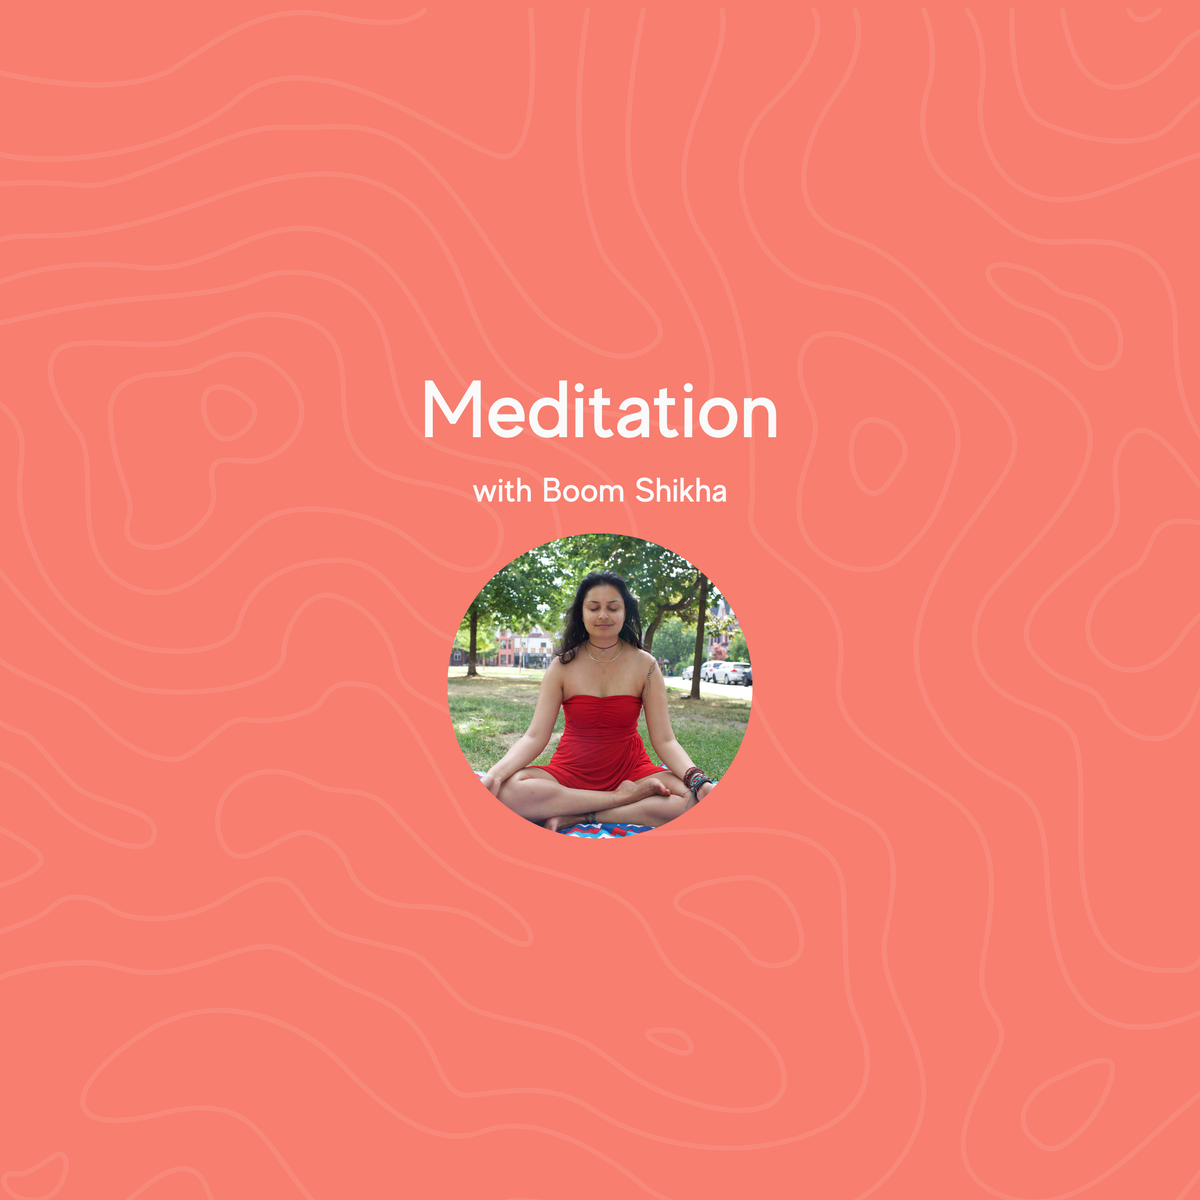 Meditation with Boom Shikha